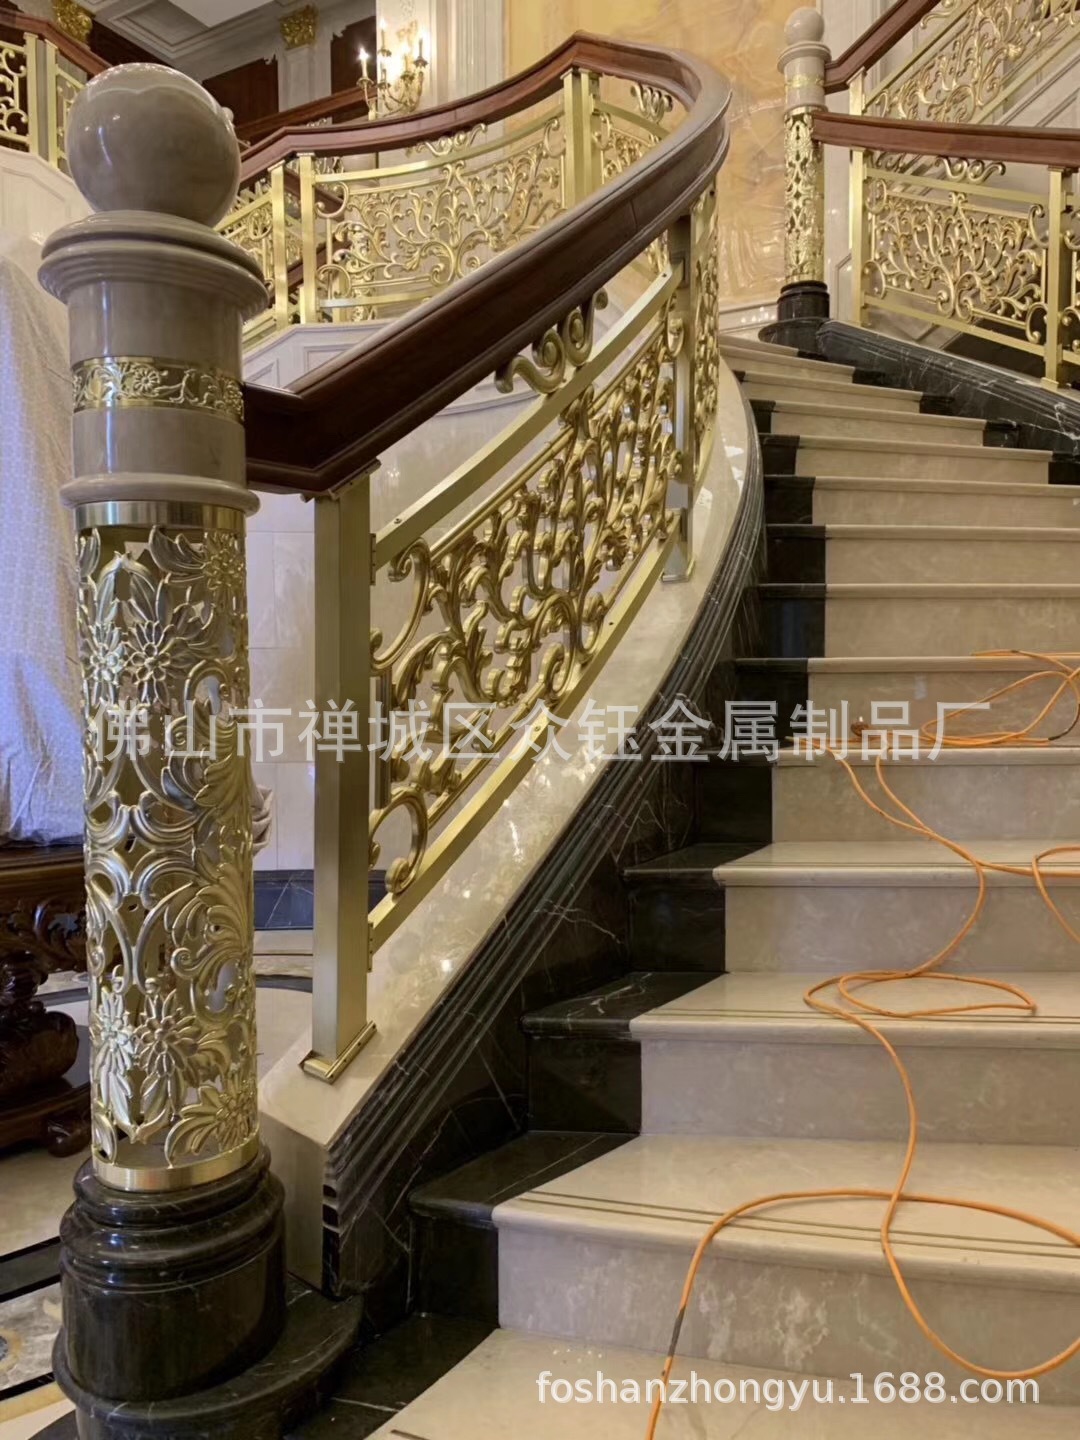 贵族世家的楼梯铜艺浮雕镀金护栏立体浮雕刻24K金护栏门第象征示例图9